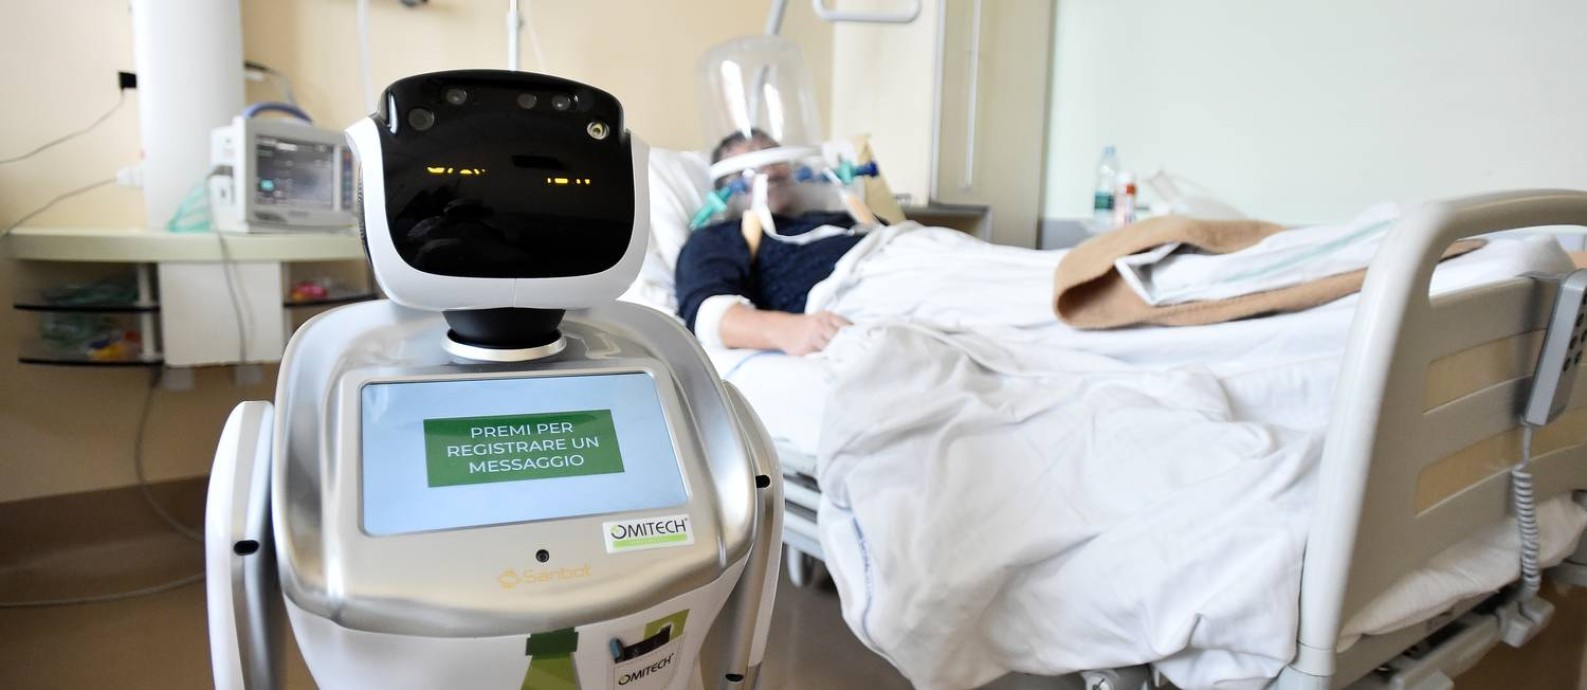 O hospital Circolo di Varese, na Itália, está usando robôs para monitorar pacientes internados como forma de proteção aos profissionais de saúde Foto: FLAVIO LO SCALZO / REUTERS